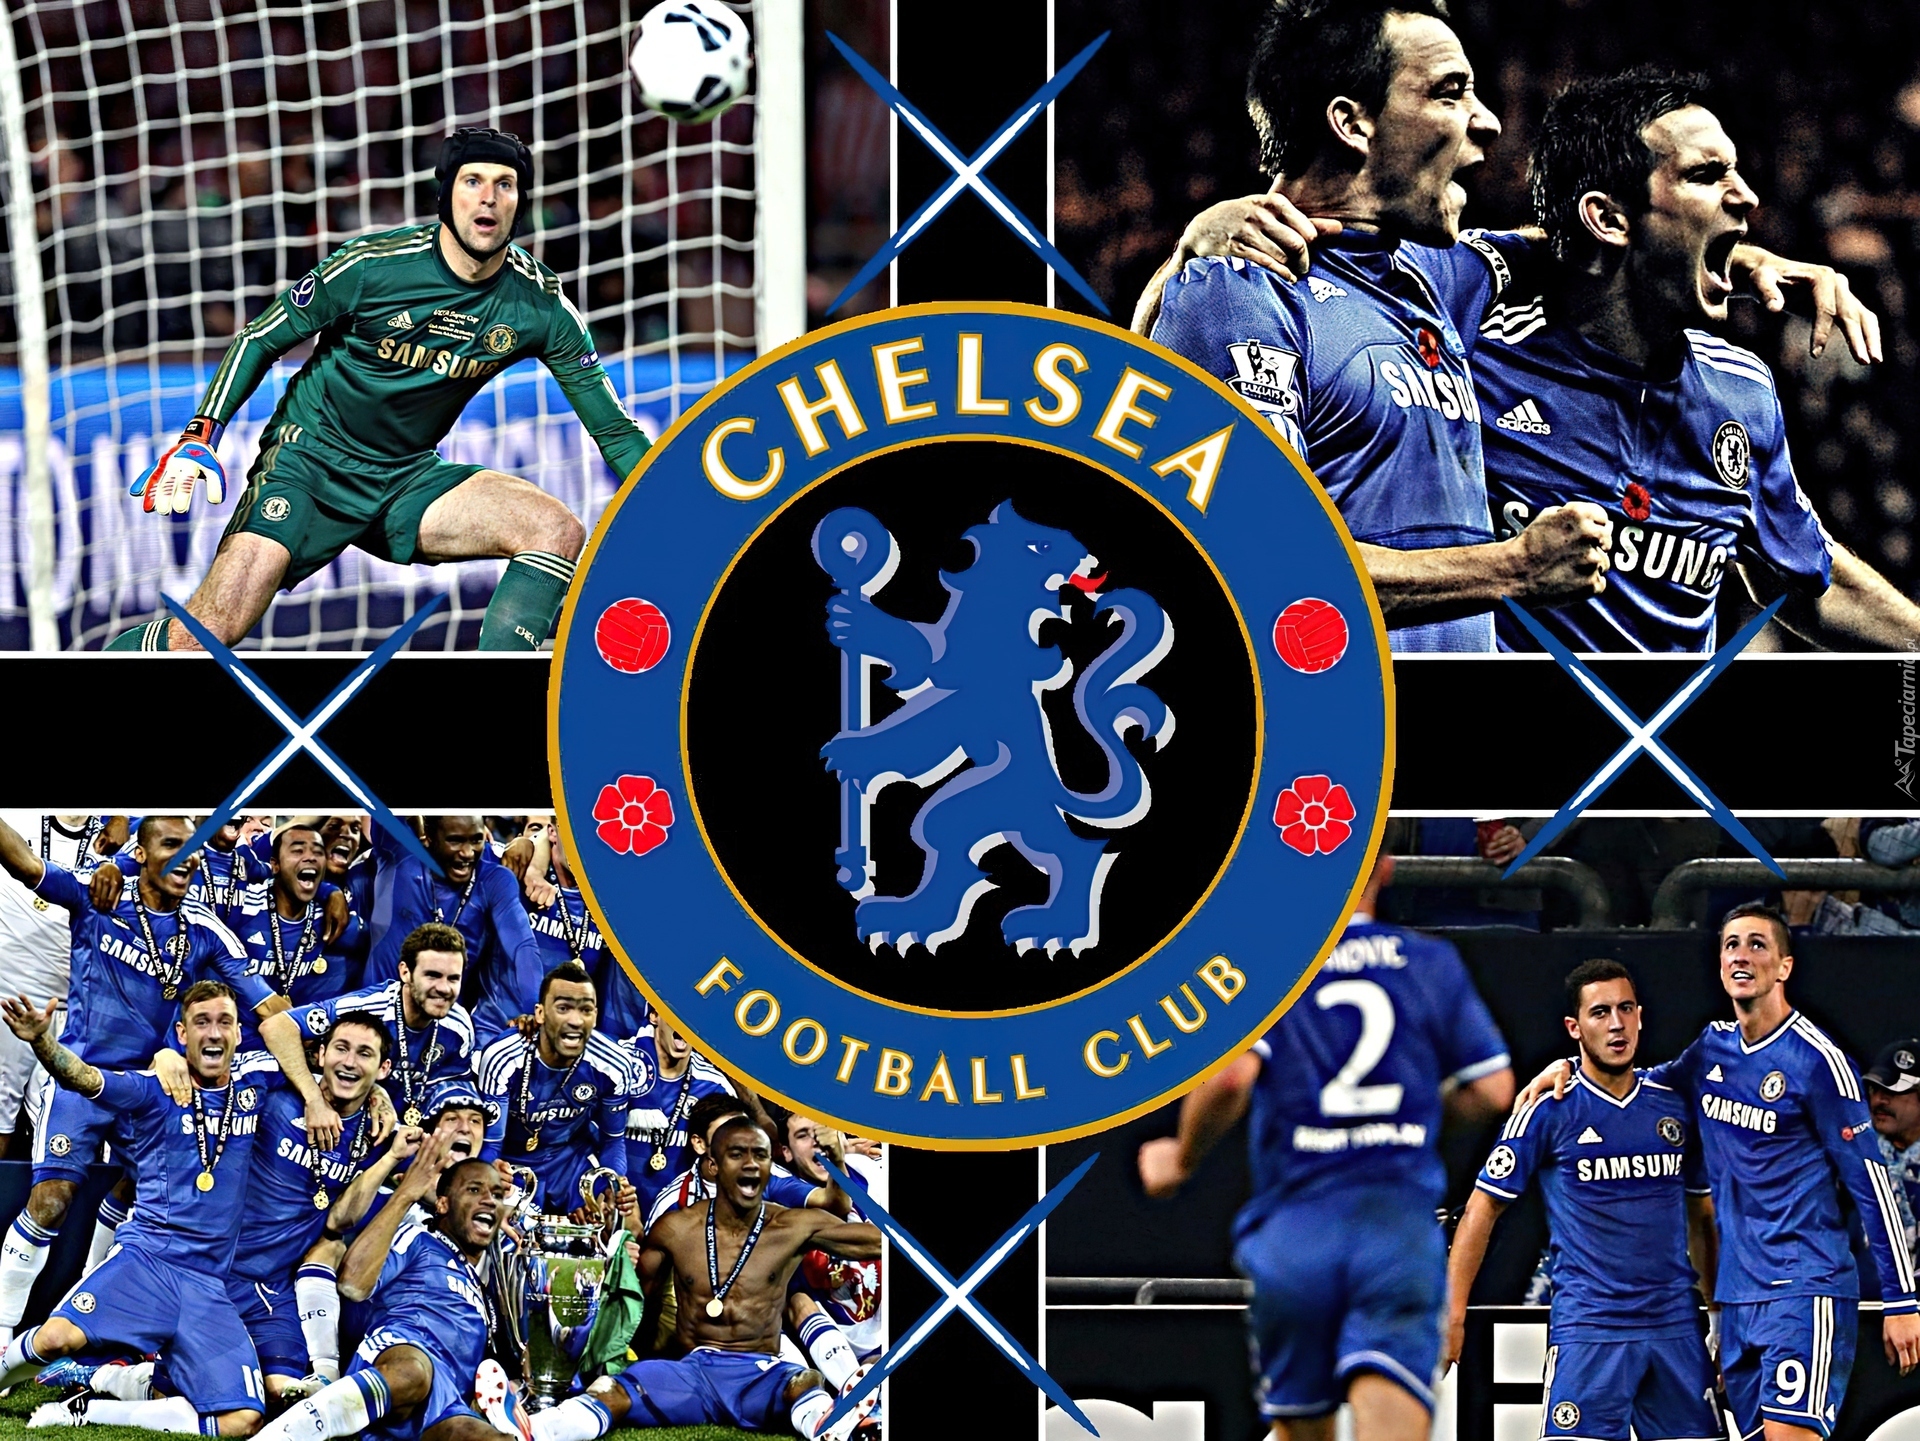 Chelsea Londyn, Puchar, Piłka Nożna